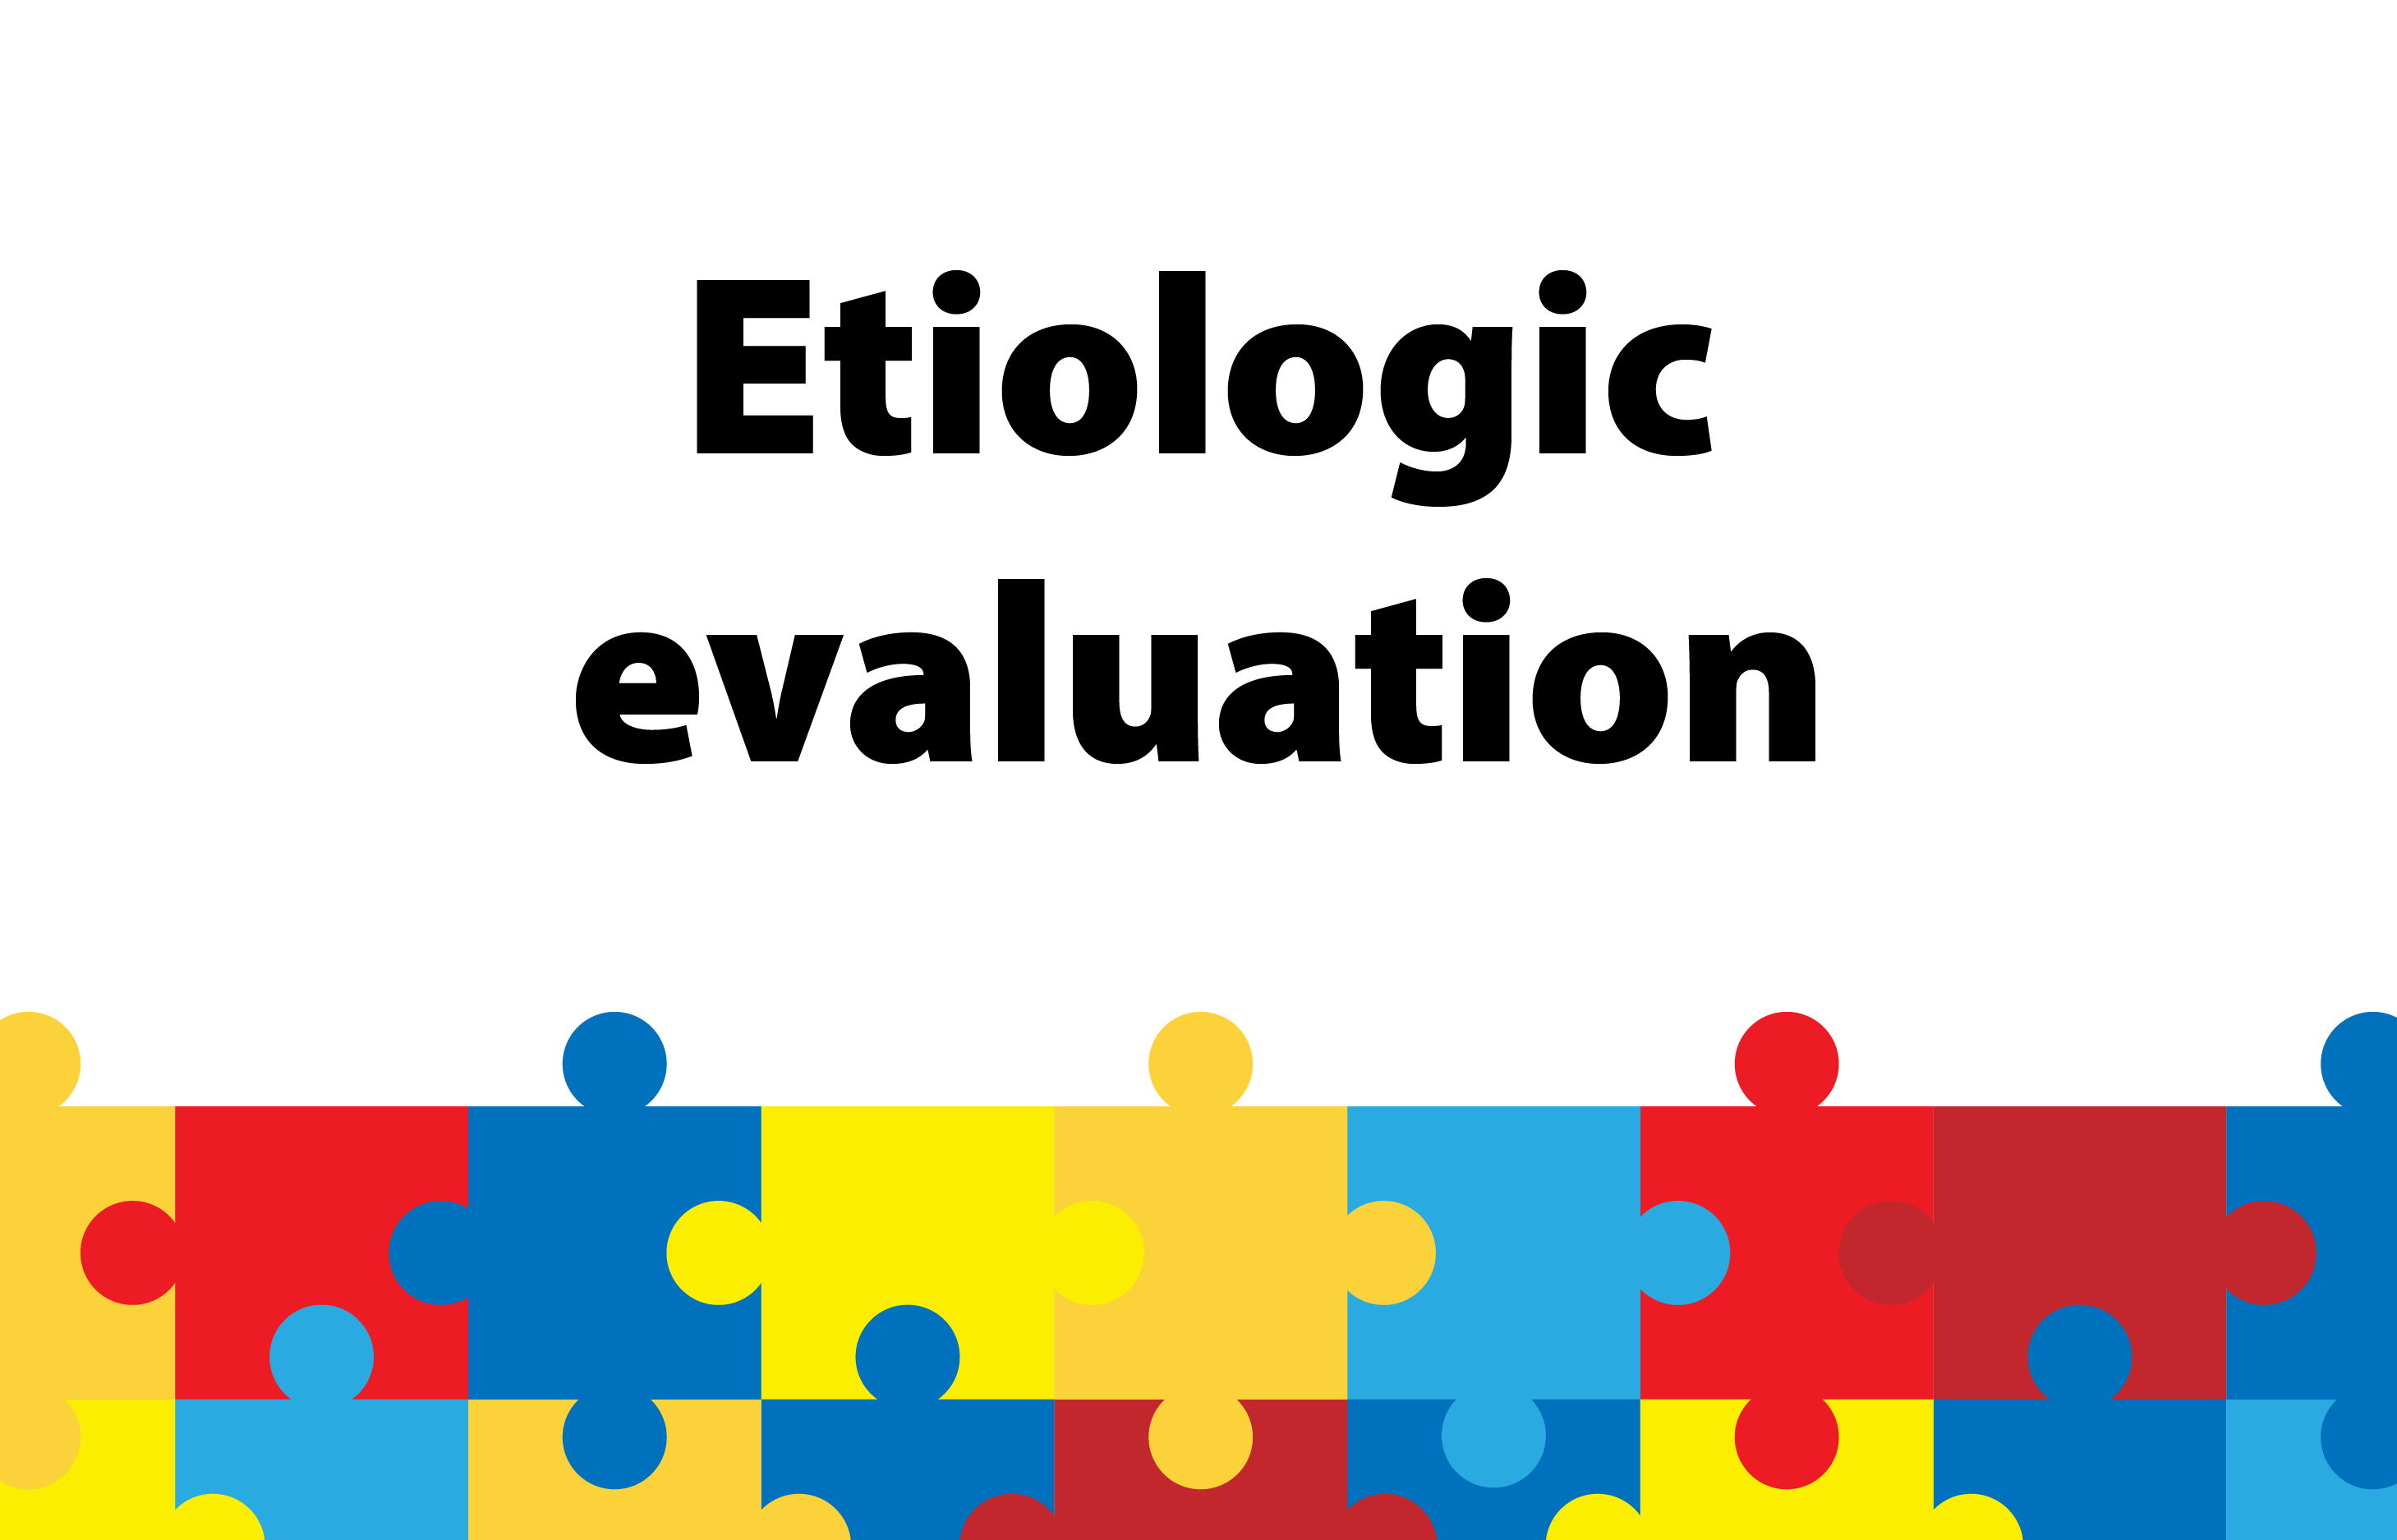 Etiologic evaluation